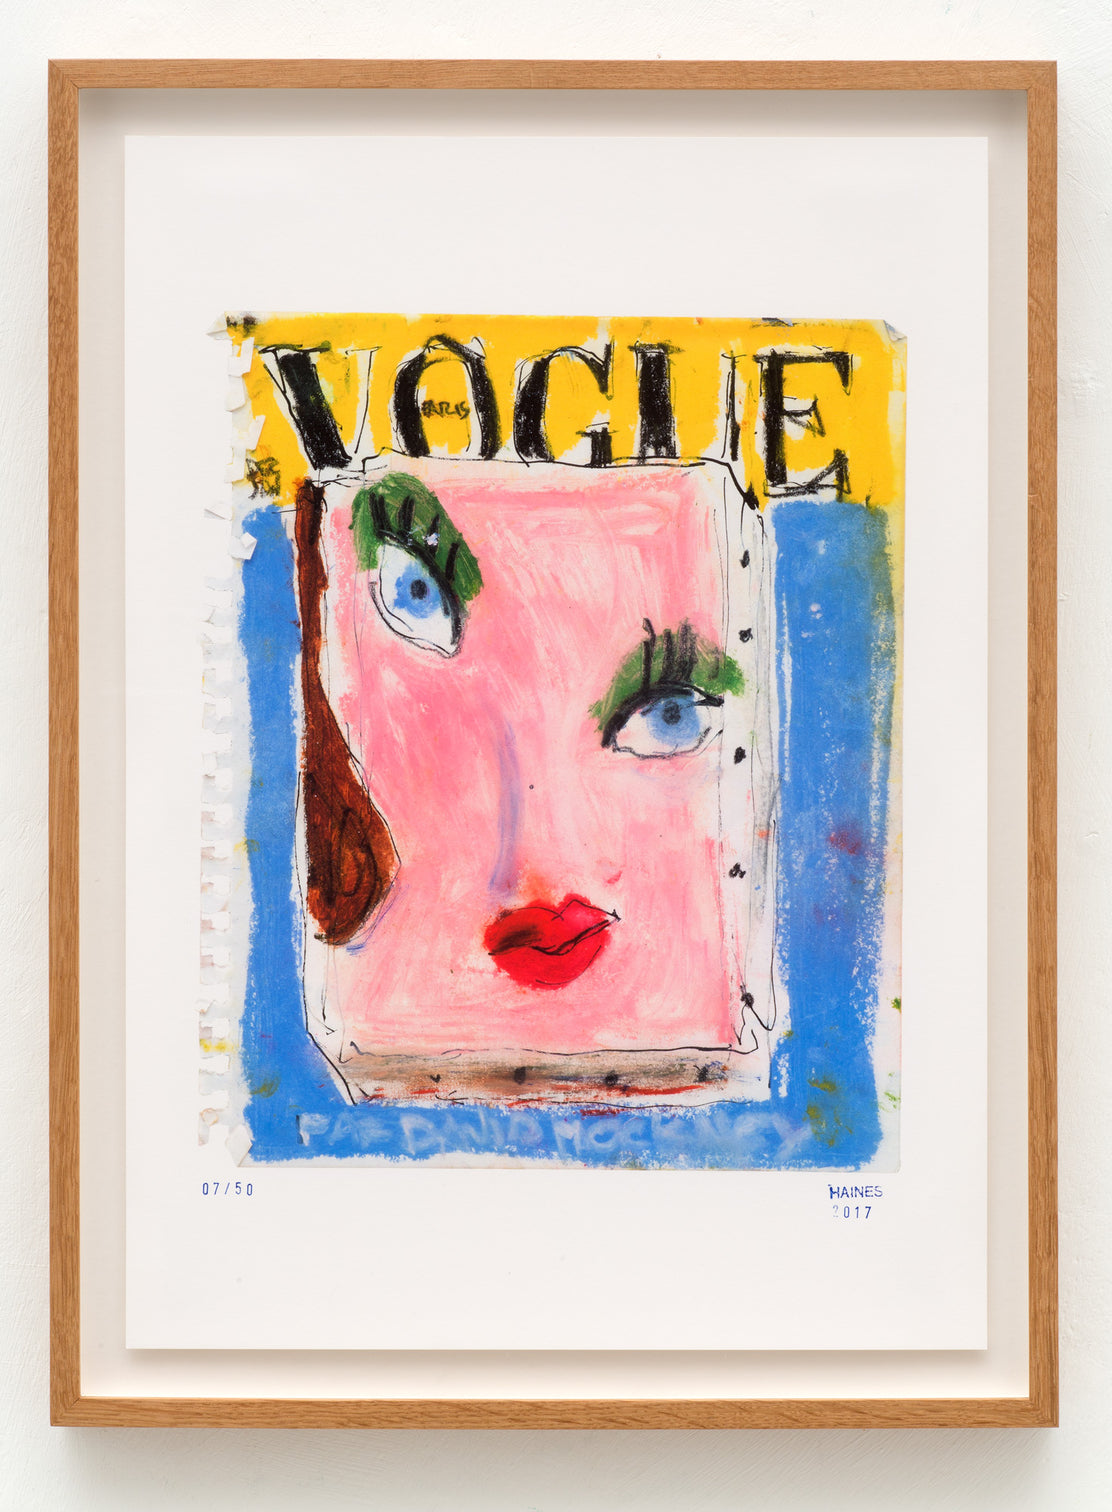 Richard Haines - Vogue Paris, Décembre1985 - Janvier 1986